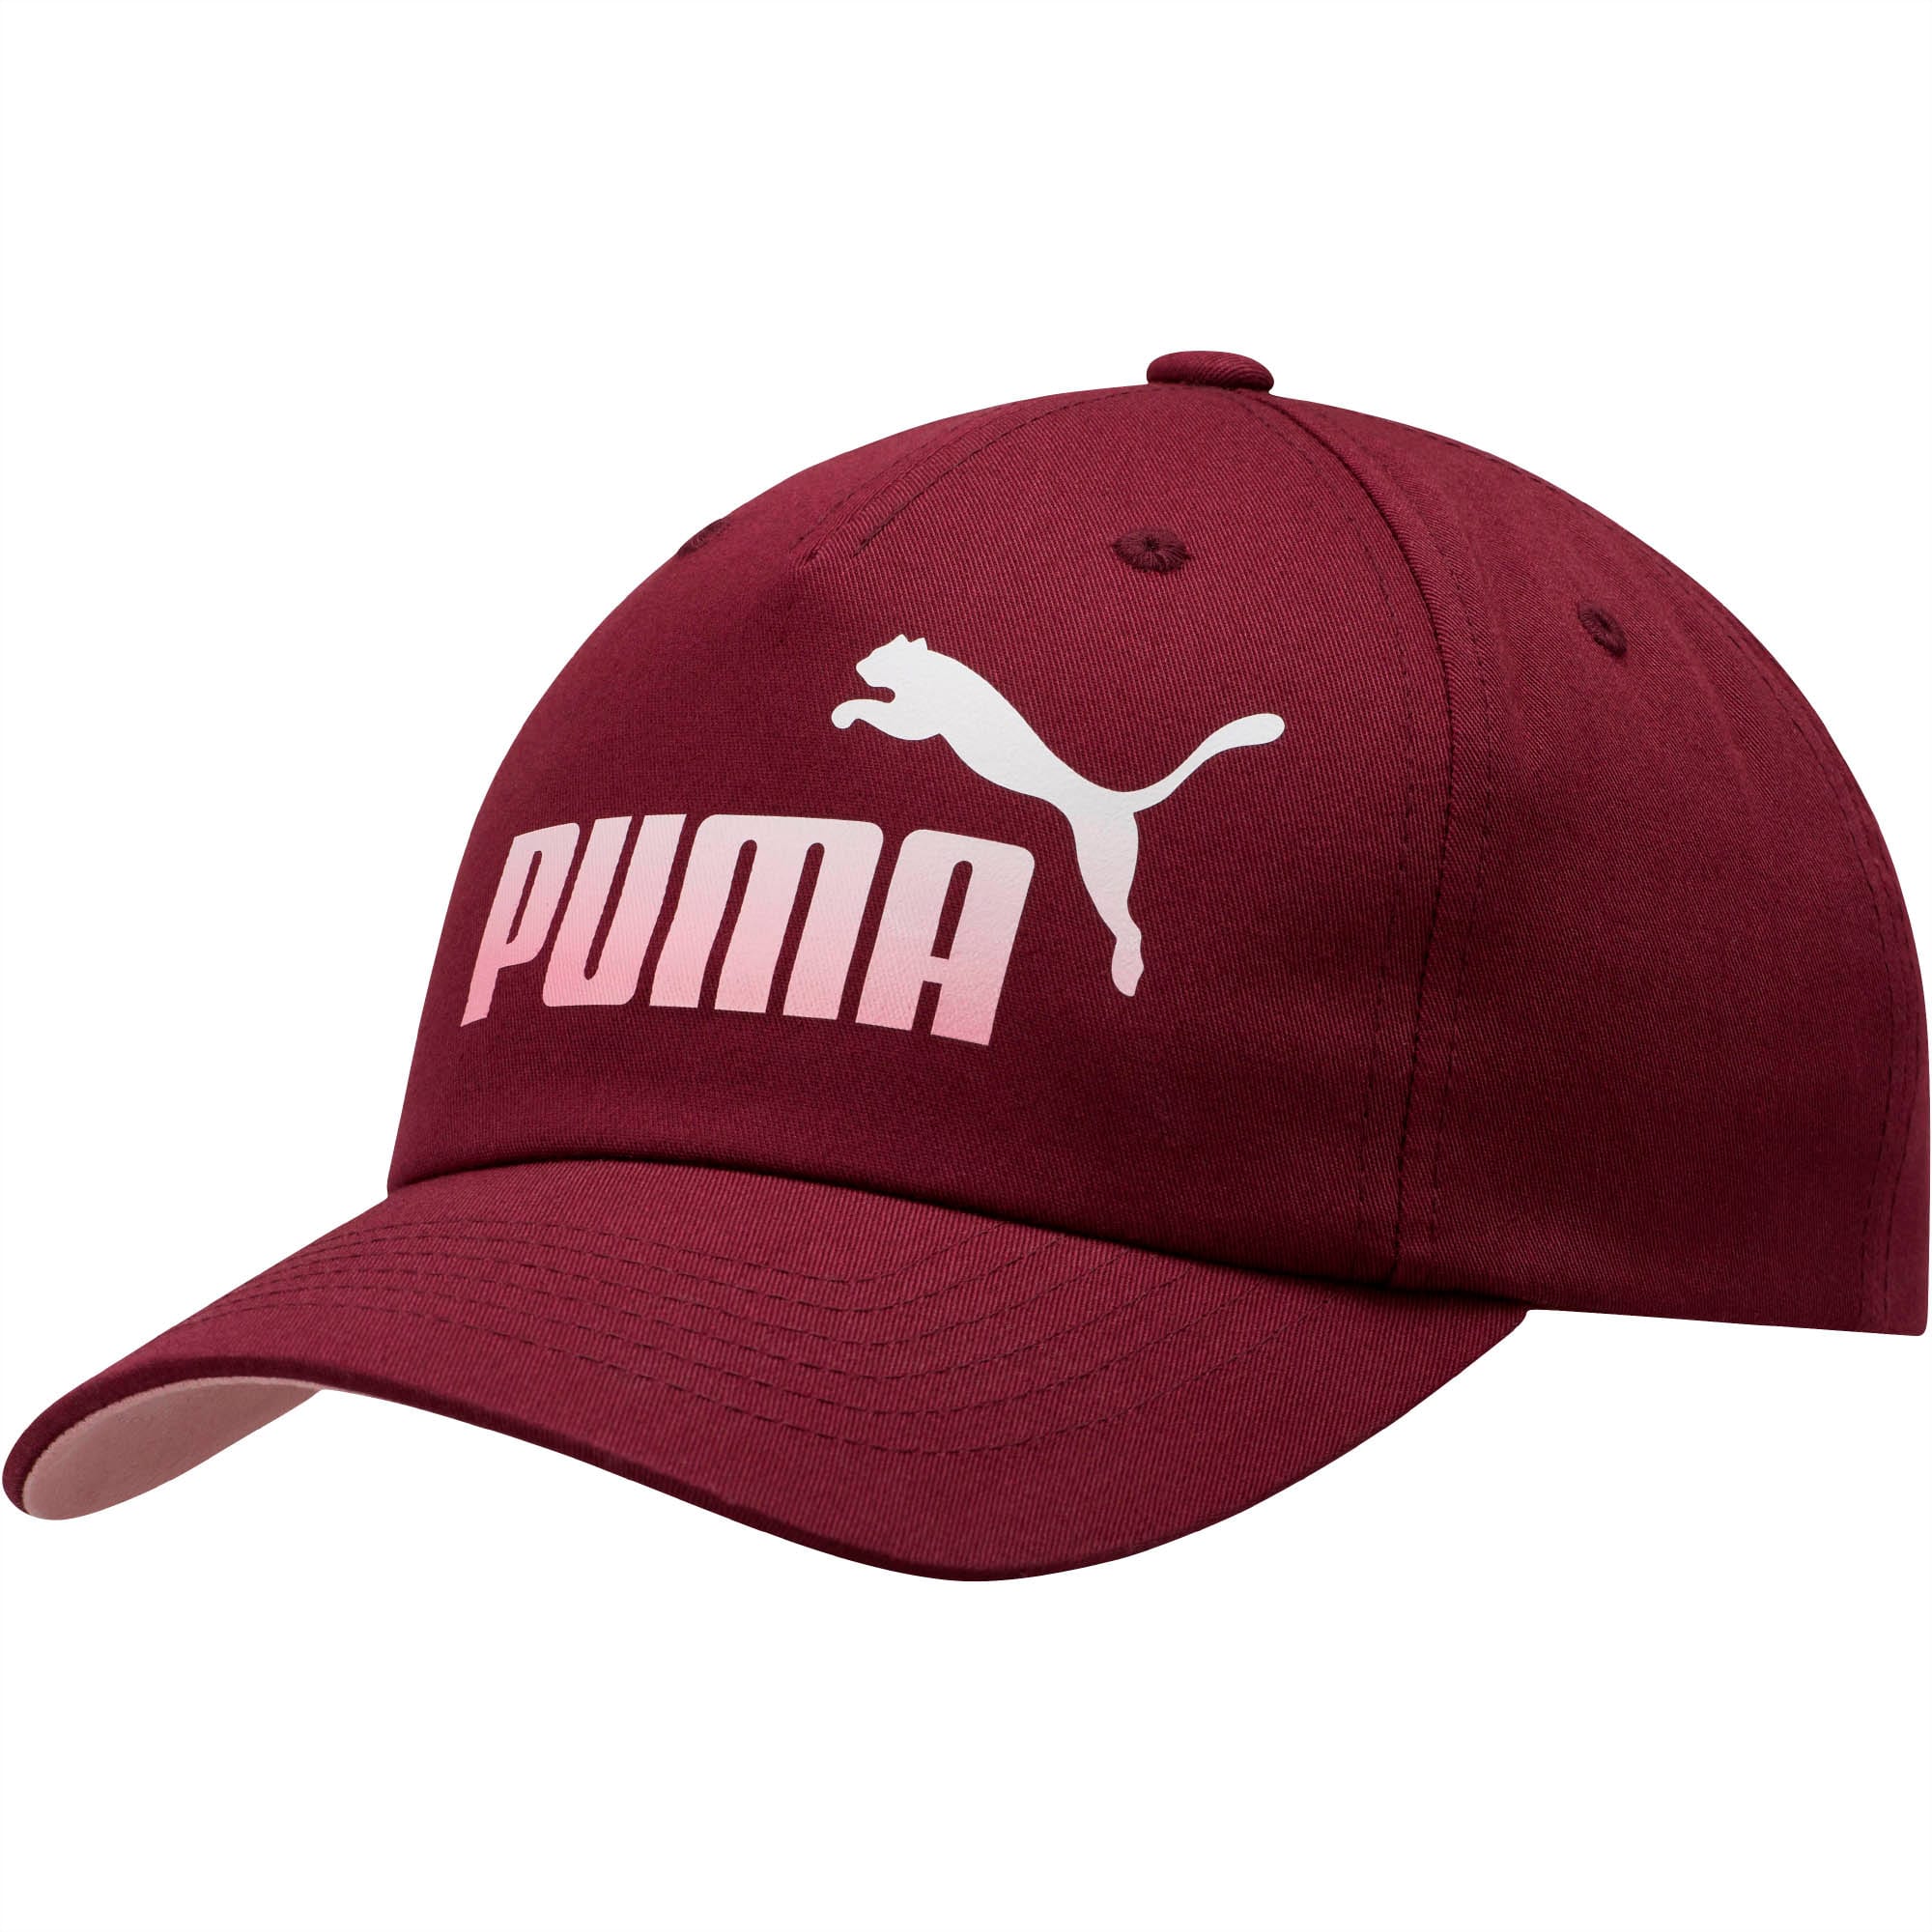 puma dad hat